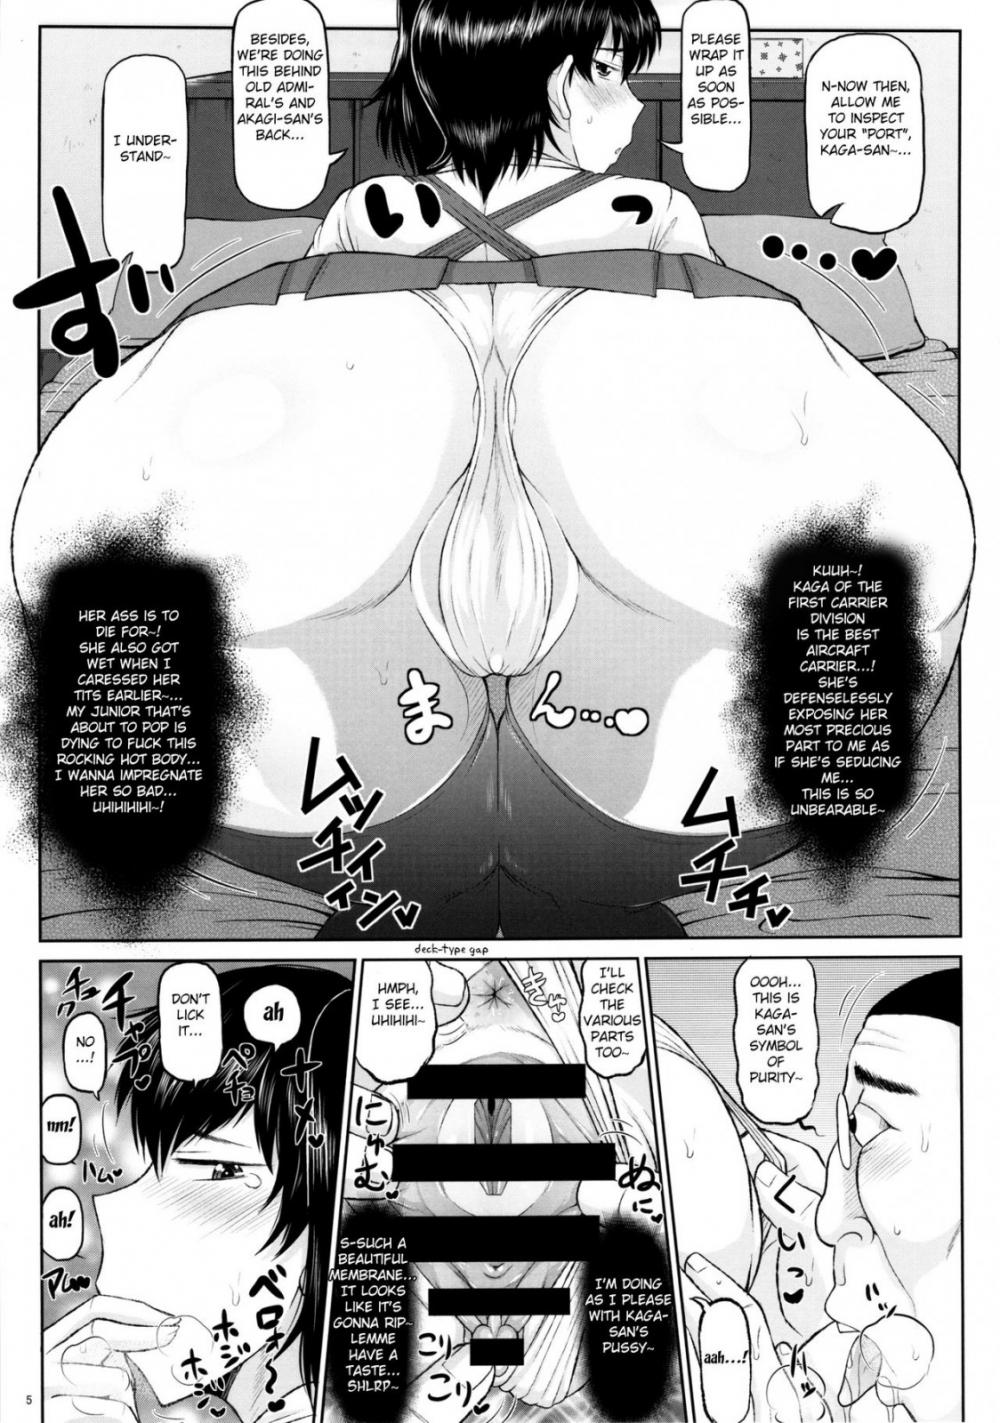 Hentai Manga Comic-Sex Practice With Kaga And Akagi-Read-6